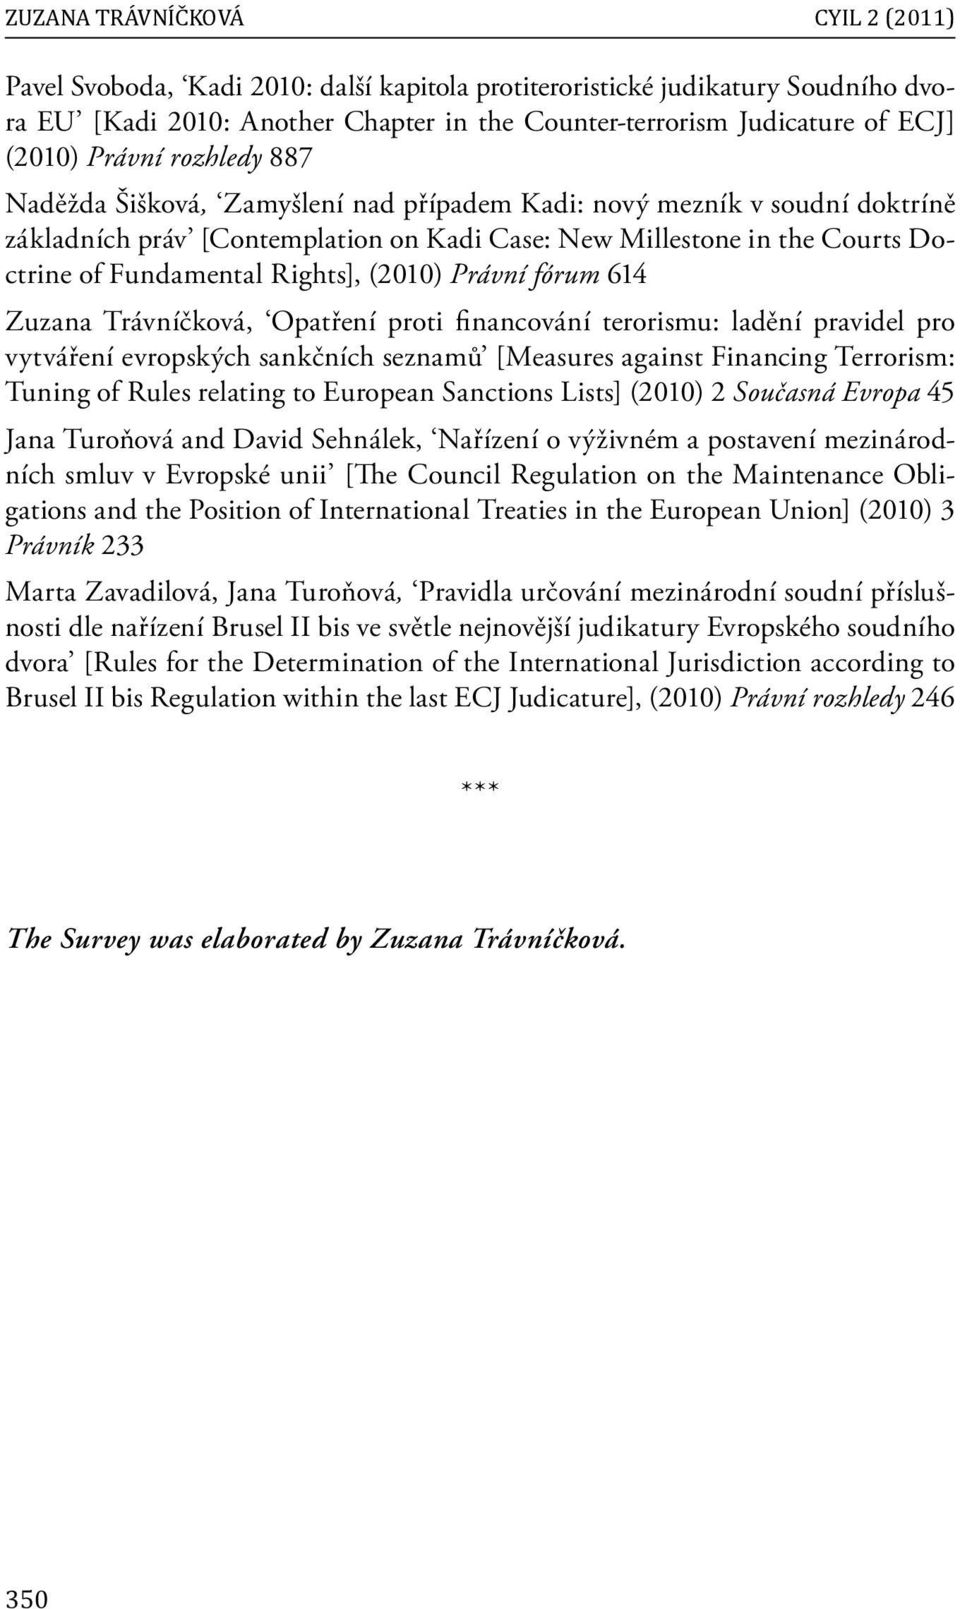 Rights], (2010) Právní fórum 614 Zuzana Trávníčková, Opatření proti fi nancování terorismu: ladění pravidel pro vytváření evropských sankčních seznamů [Measures against Financing Terrorism: Tuning of